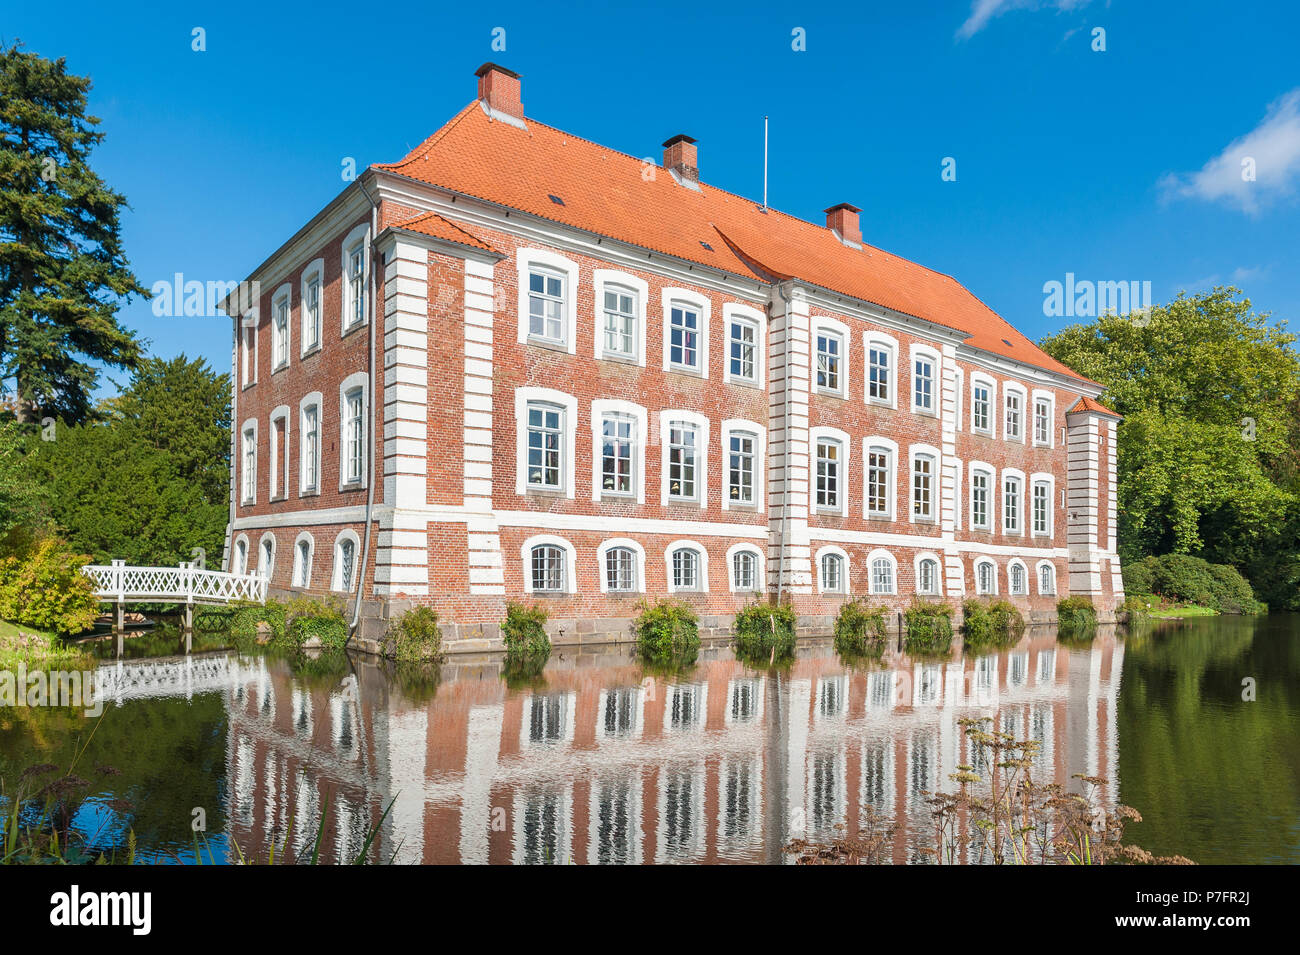 Manor House of Gut Güldenstein, Harmsdorf, Schleswig-Holstein, Germany Stock Photo